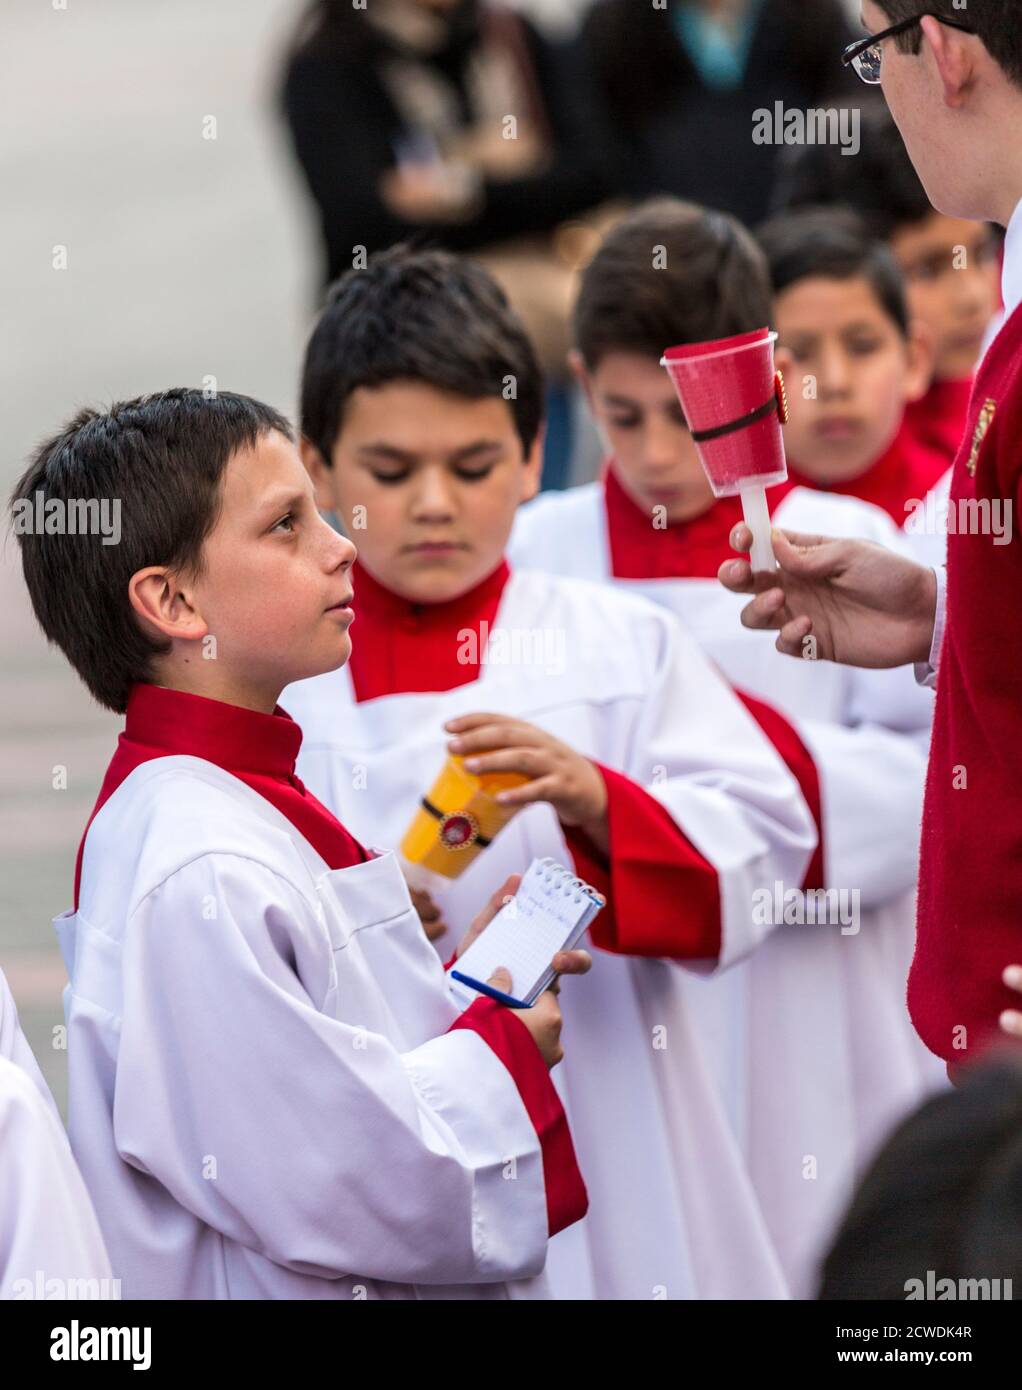 Cuenca, Équateur - 4 juin 2015 - prêtre curé catholique stagiaire parle aux jeunes garçons avant la procession Corpus Cristi Banque D'Images